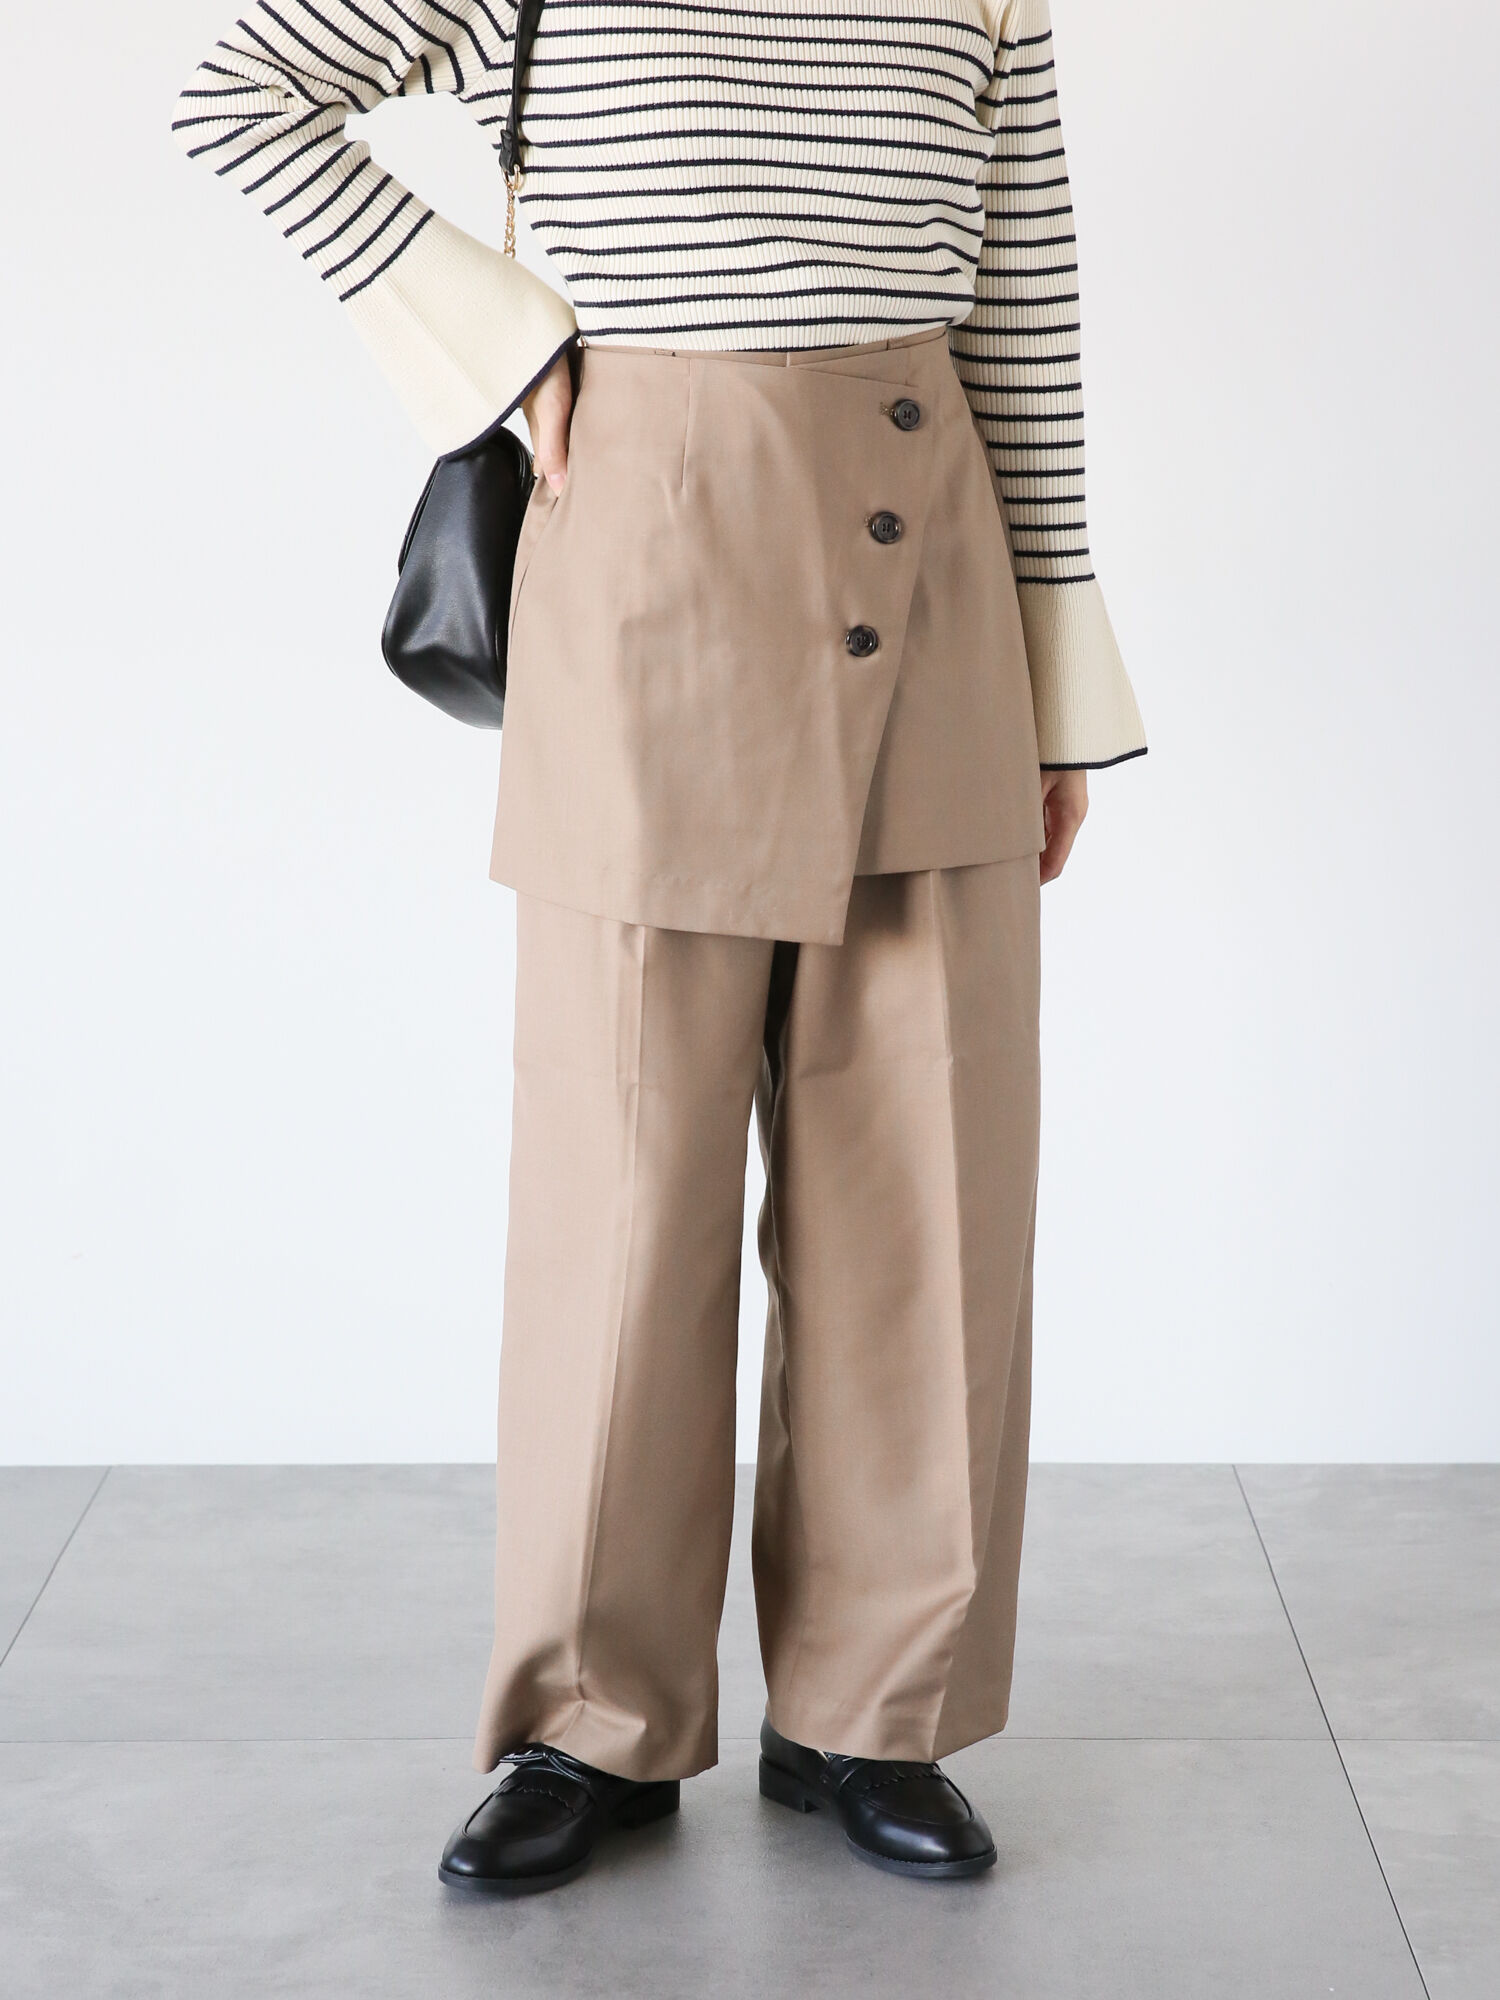 ちゅぶ classy 半袖シャツ 2wayスカート セット-